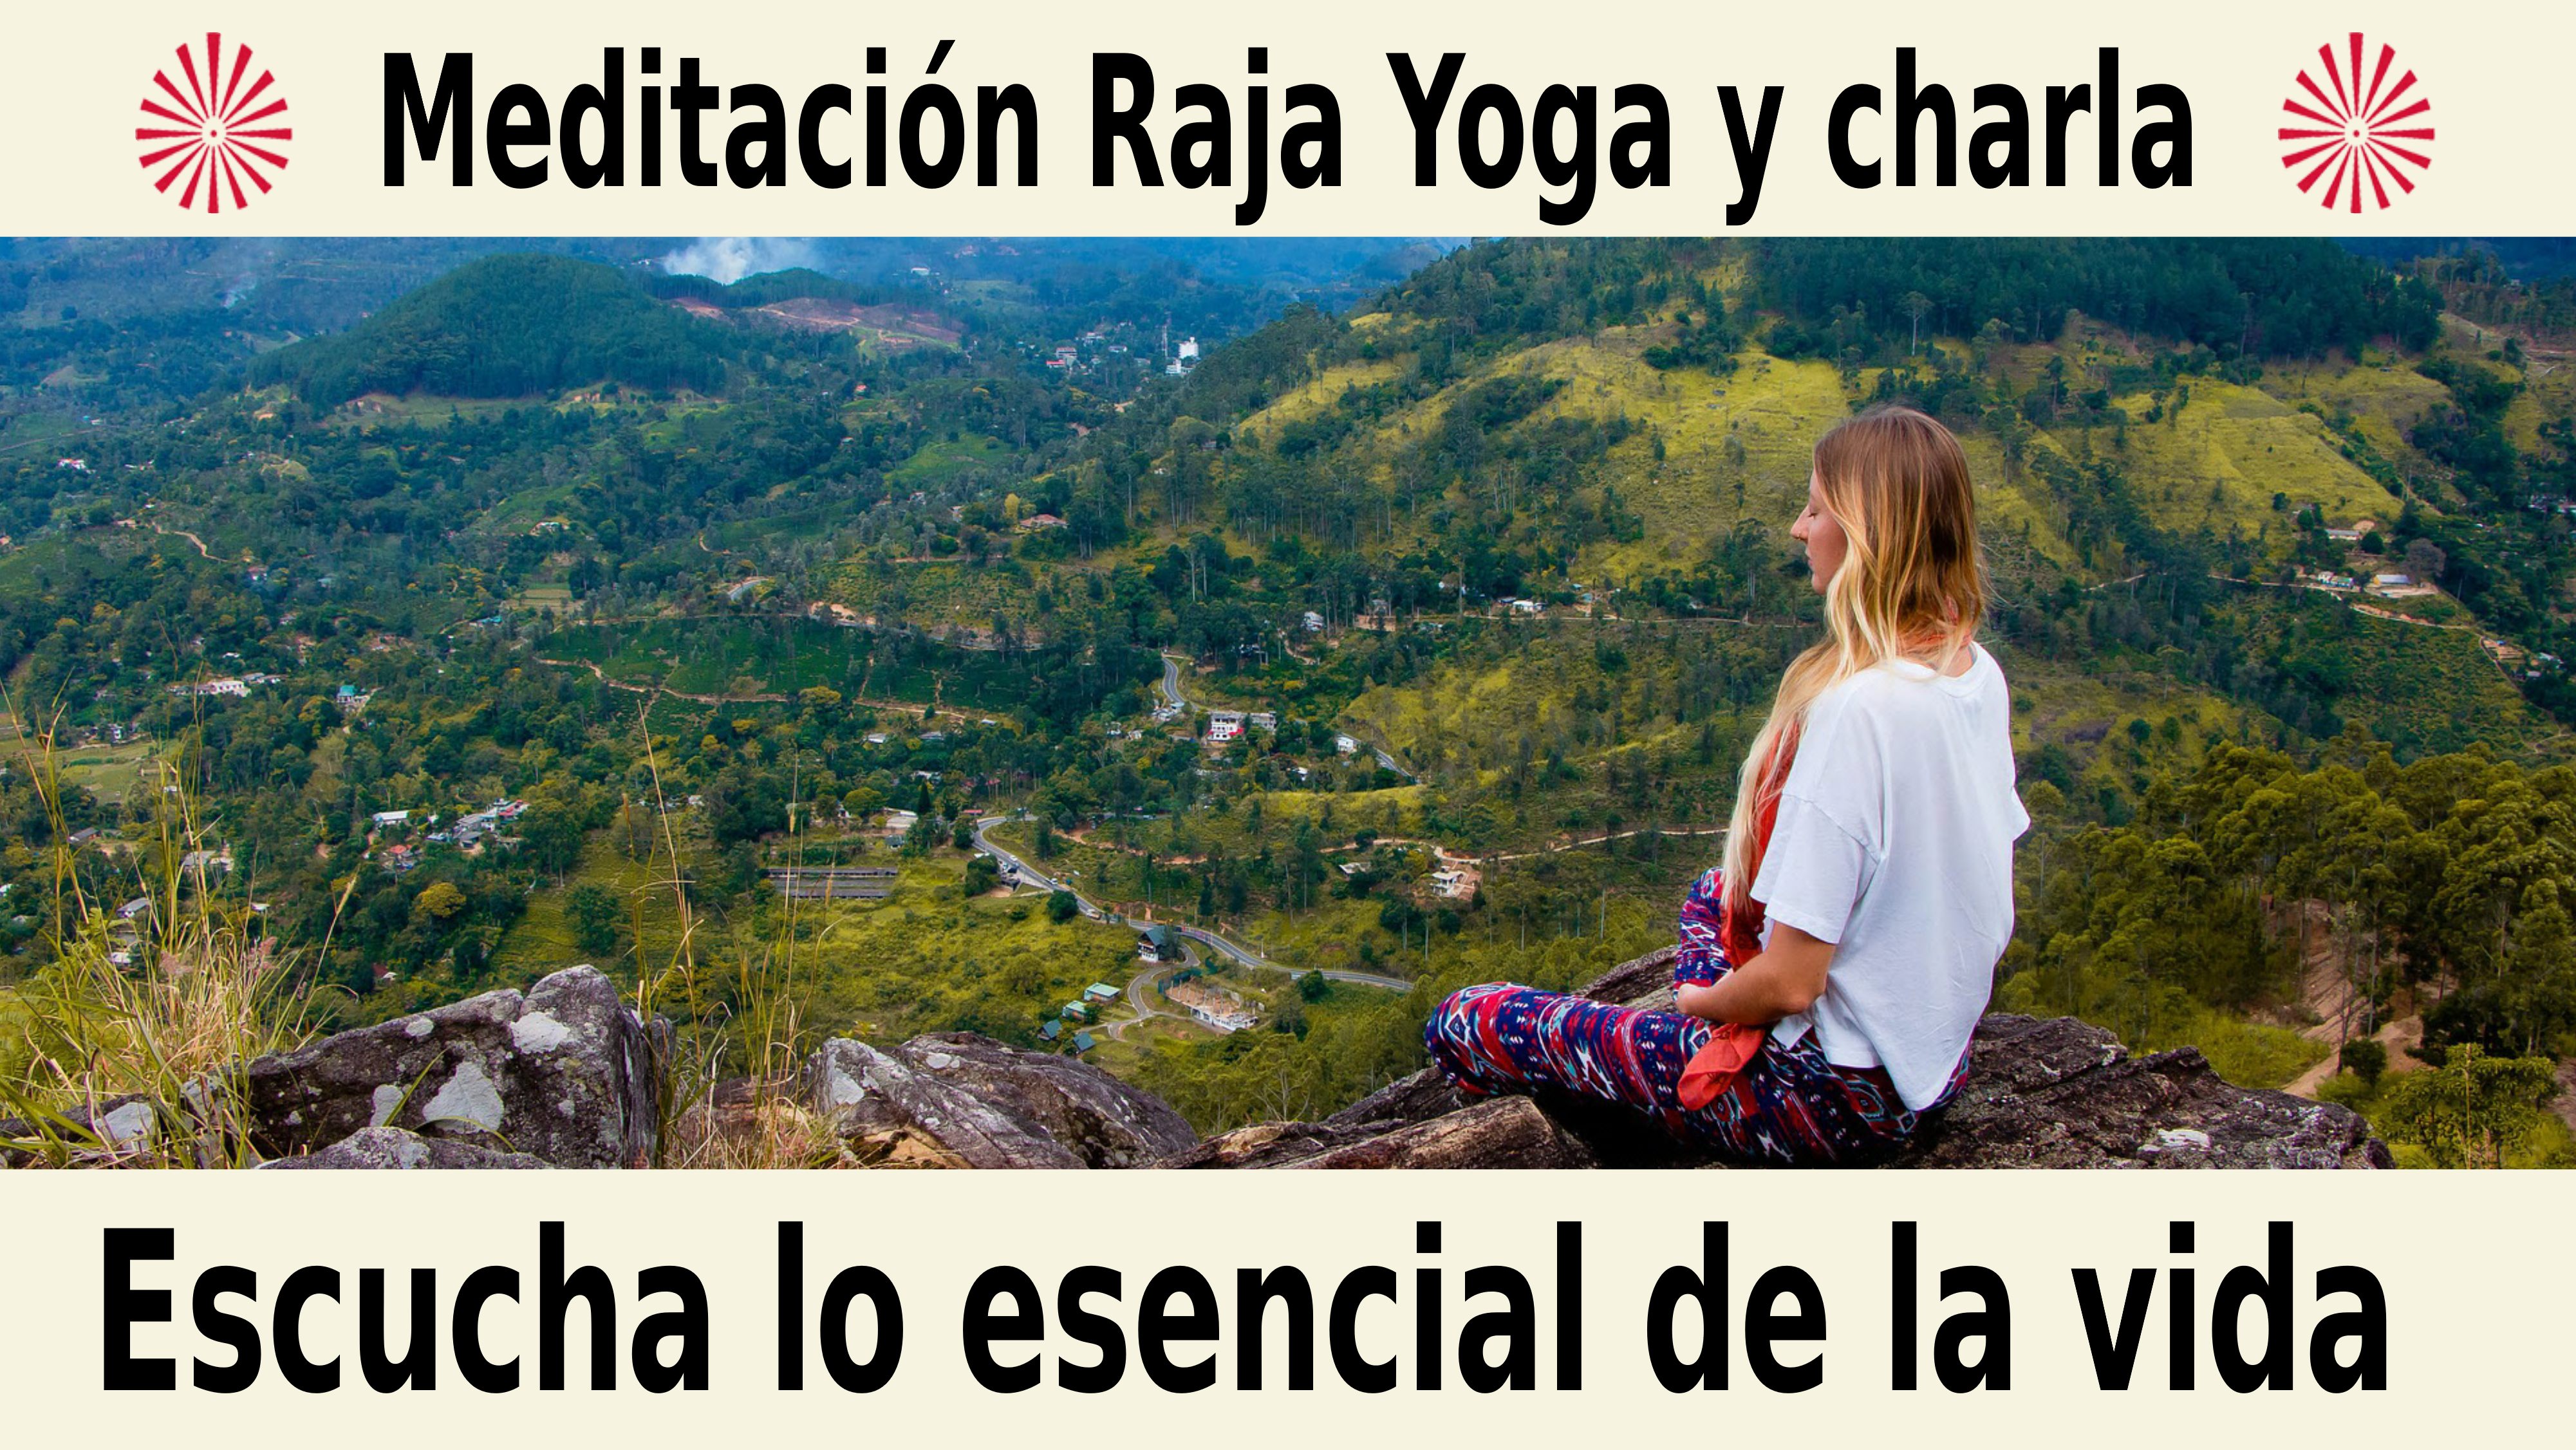 Meditación Raja Yoga y charla: Escucha lo esencial de la vida (9 Diciembre 2020) On-line desde Sevilla